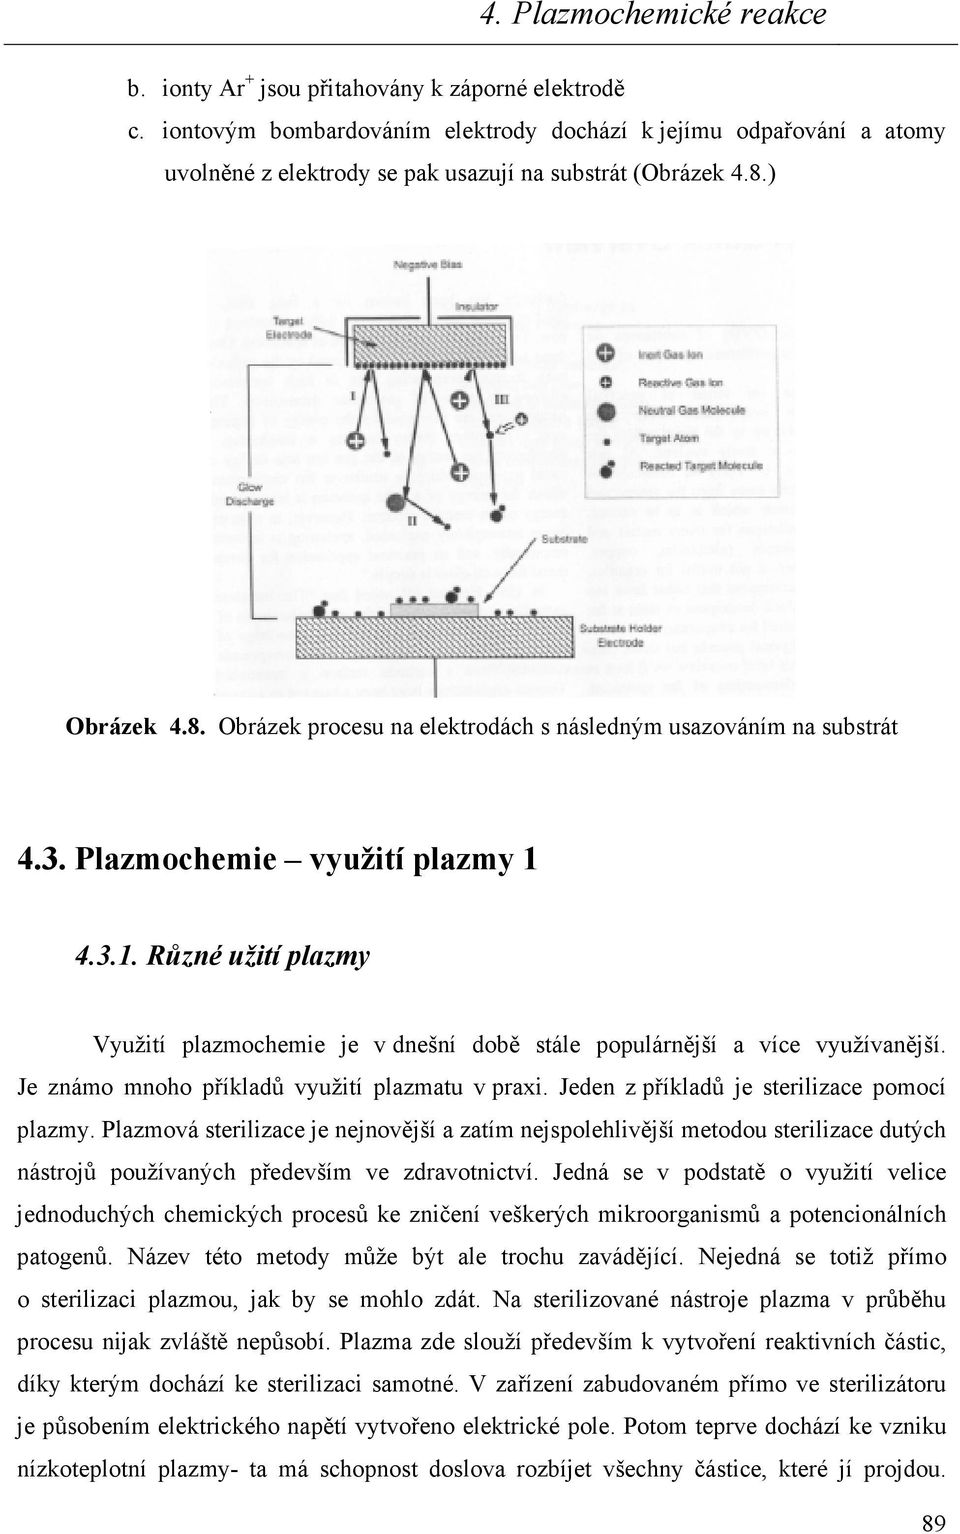 4.3.1. Různé užití plazmy Využití plazmochemie je v dnešní době stále populárnější a více využívanější. Je známo mnoho příkladů využití plazmatu v praxi. Jeden z příkladů je sterilizace pomocí plazmy.